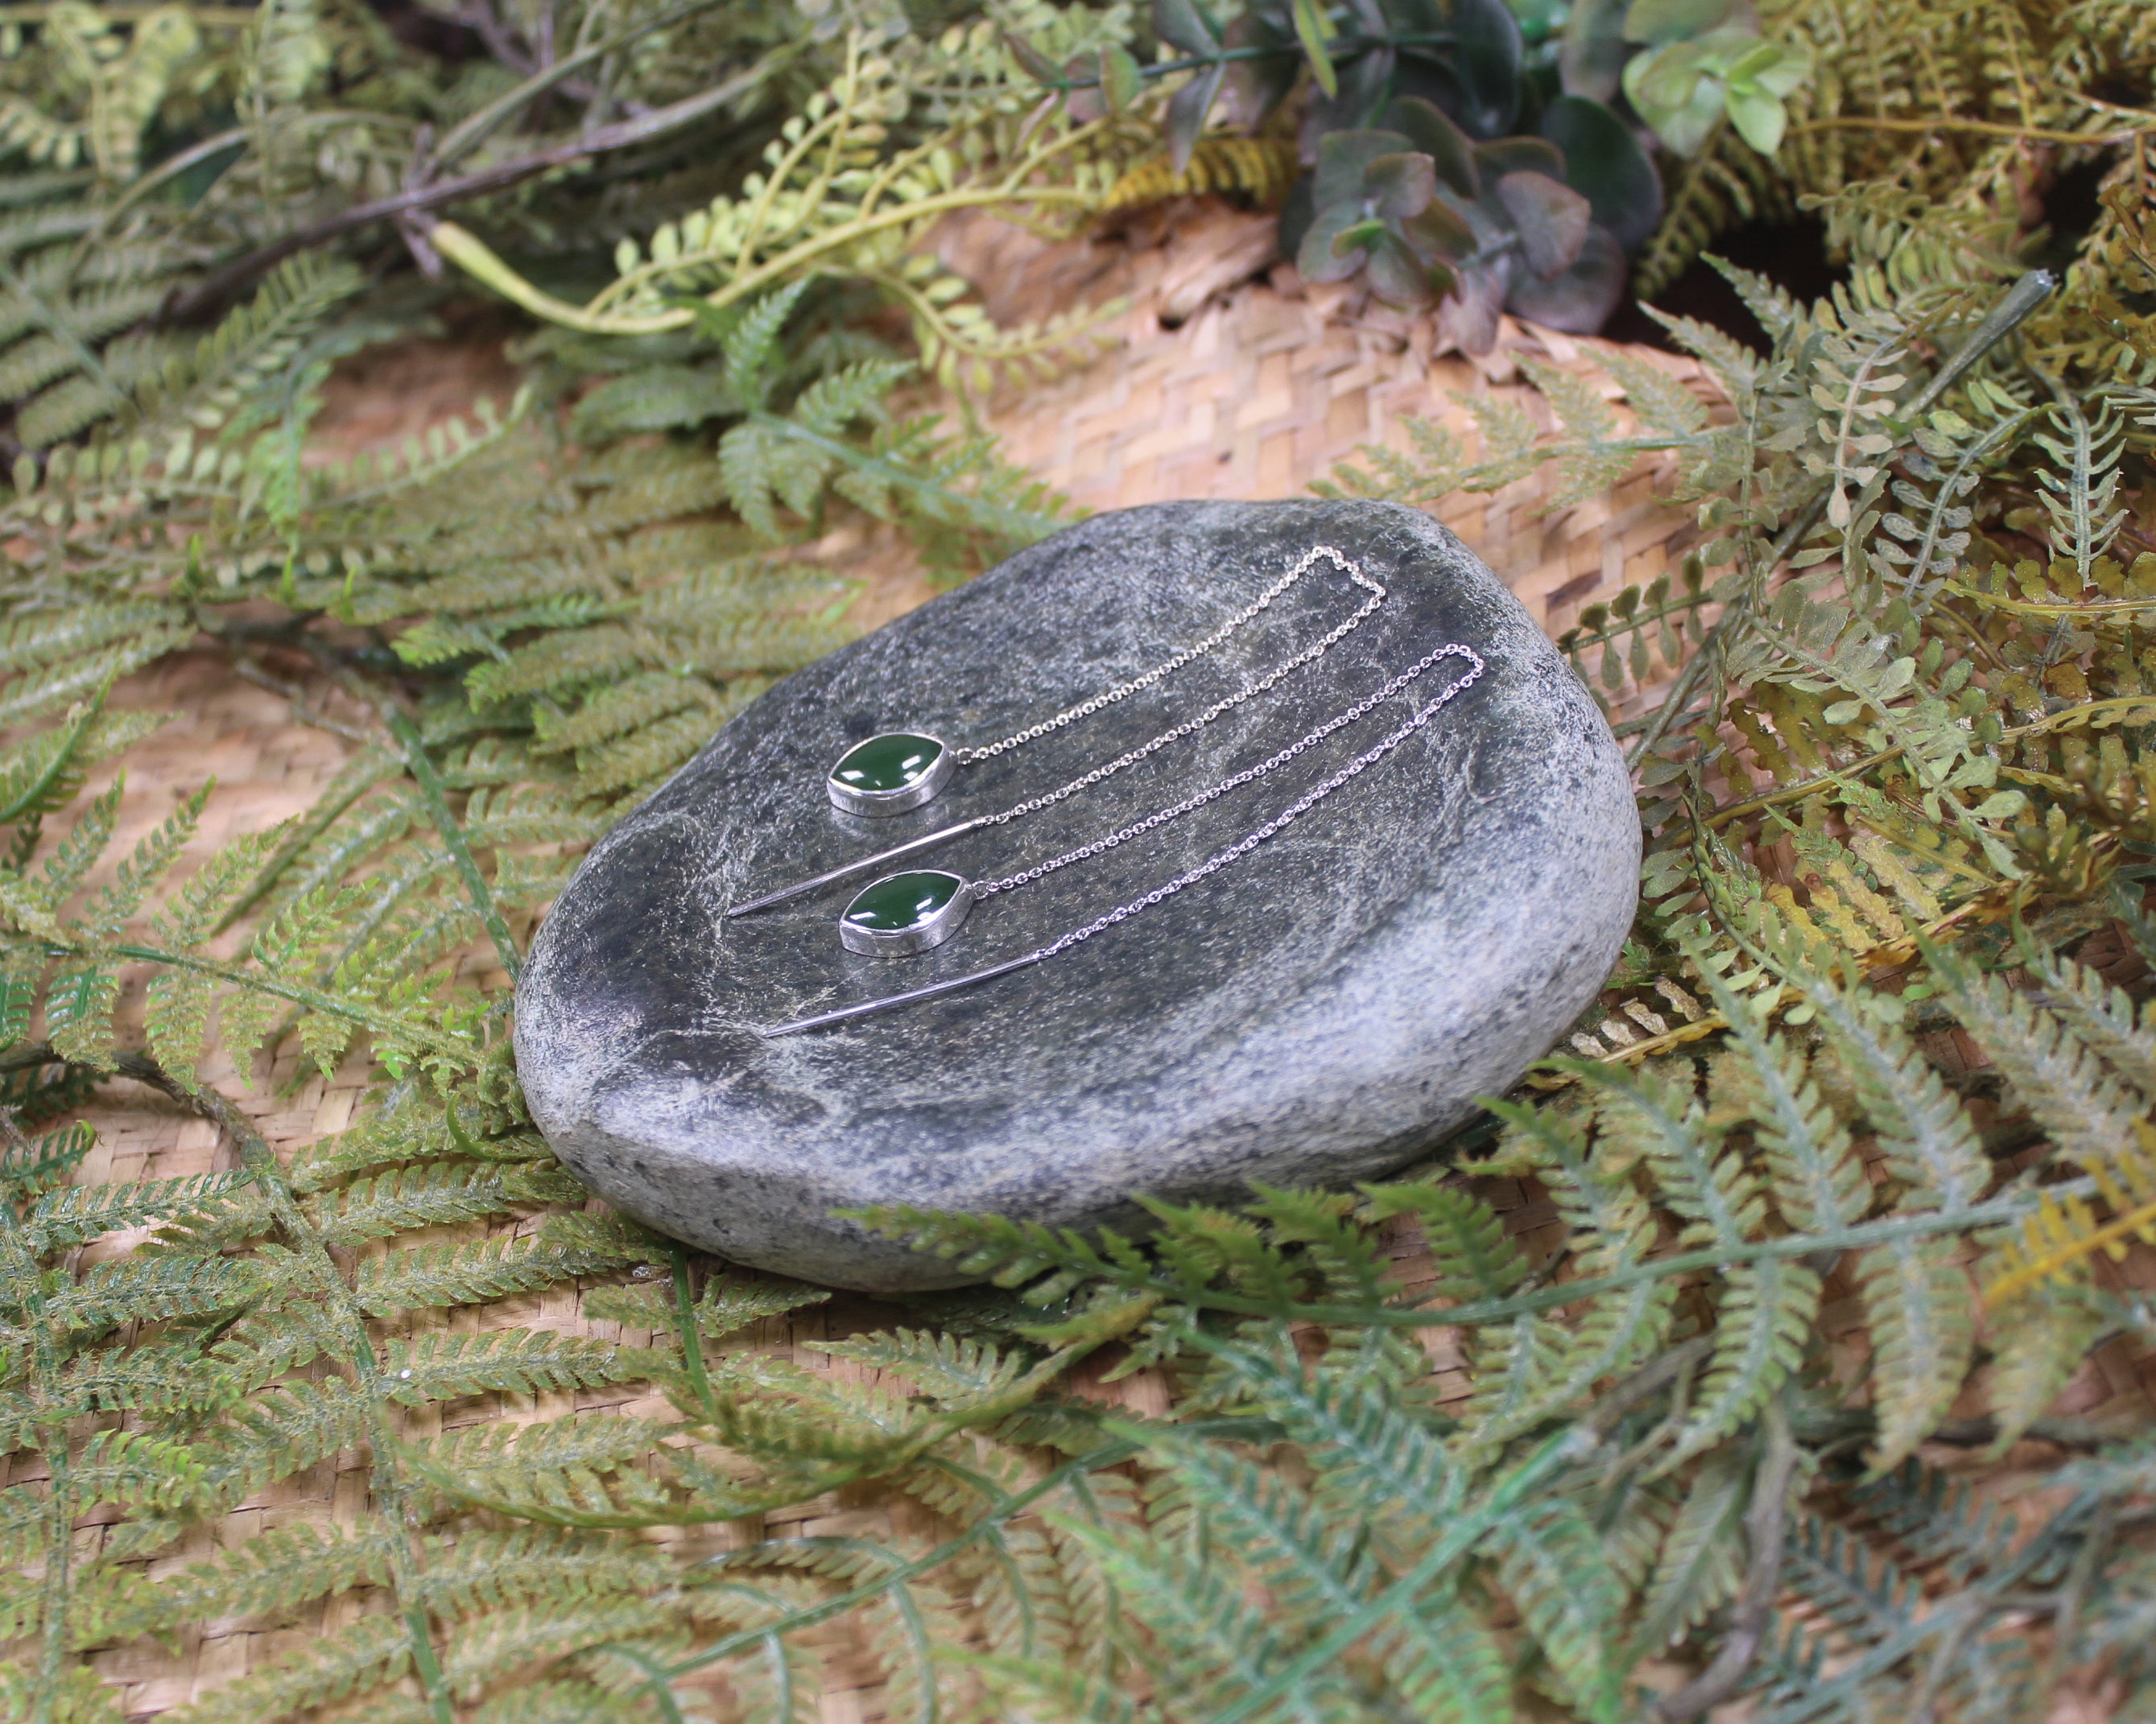 Threaded Styled Earrings carved from Kawakawa Pounamu - NZ Greenstone